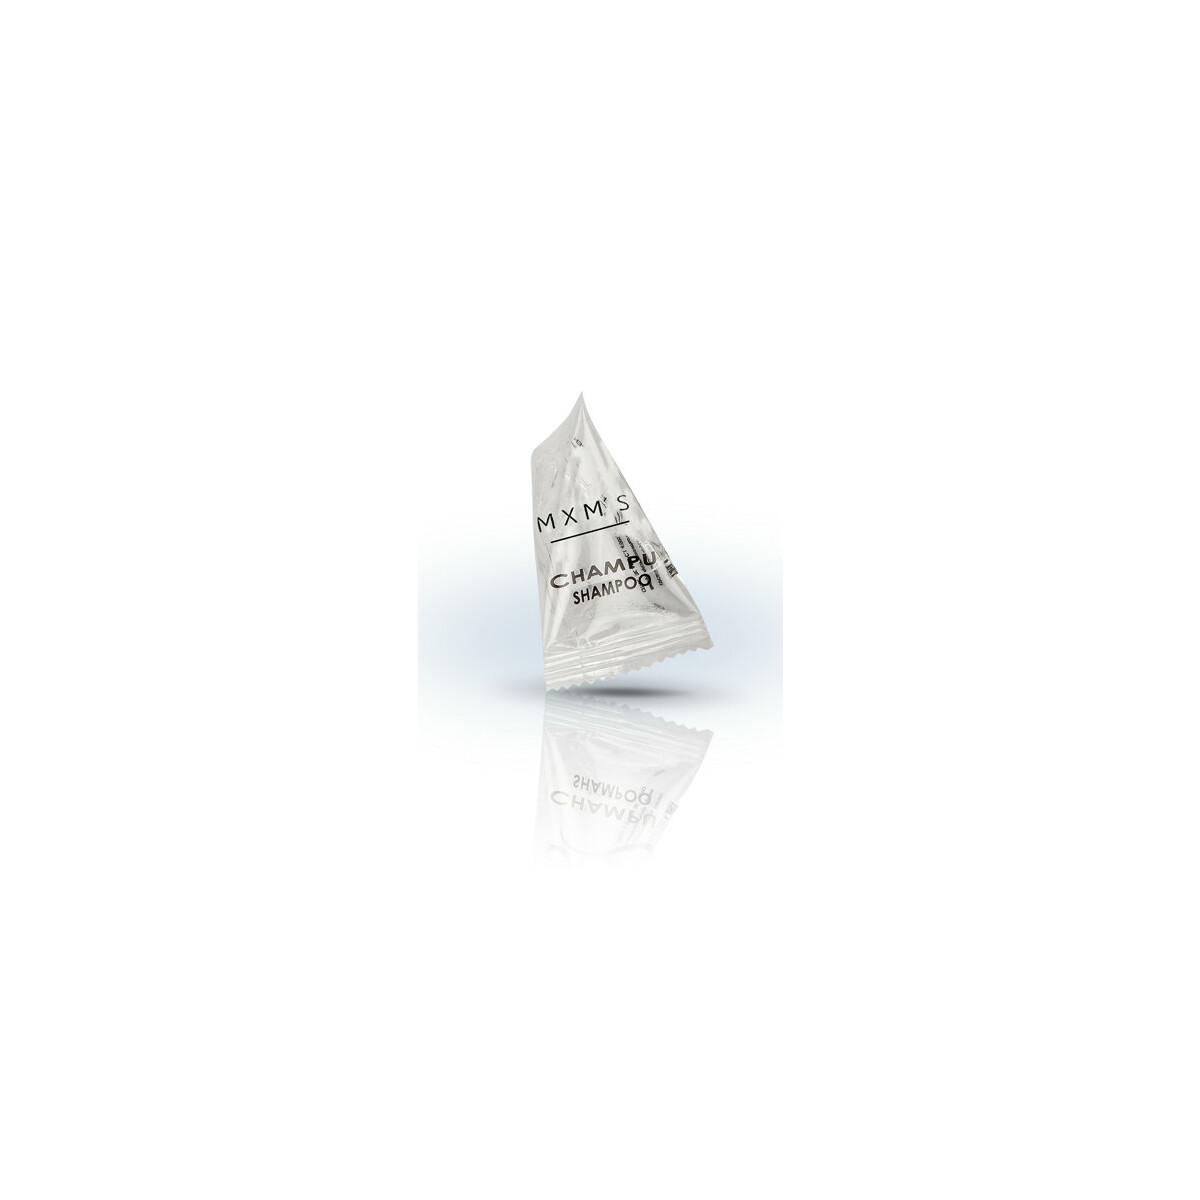 Shampoo Pyramide, 15 ml